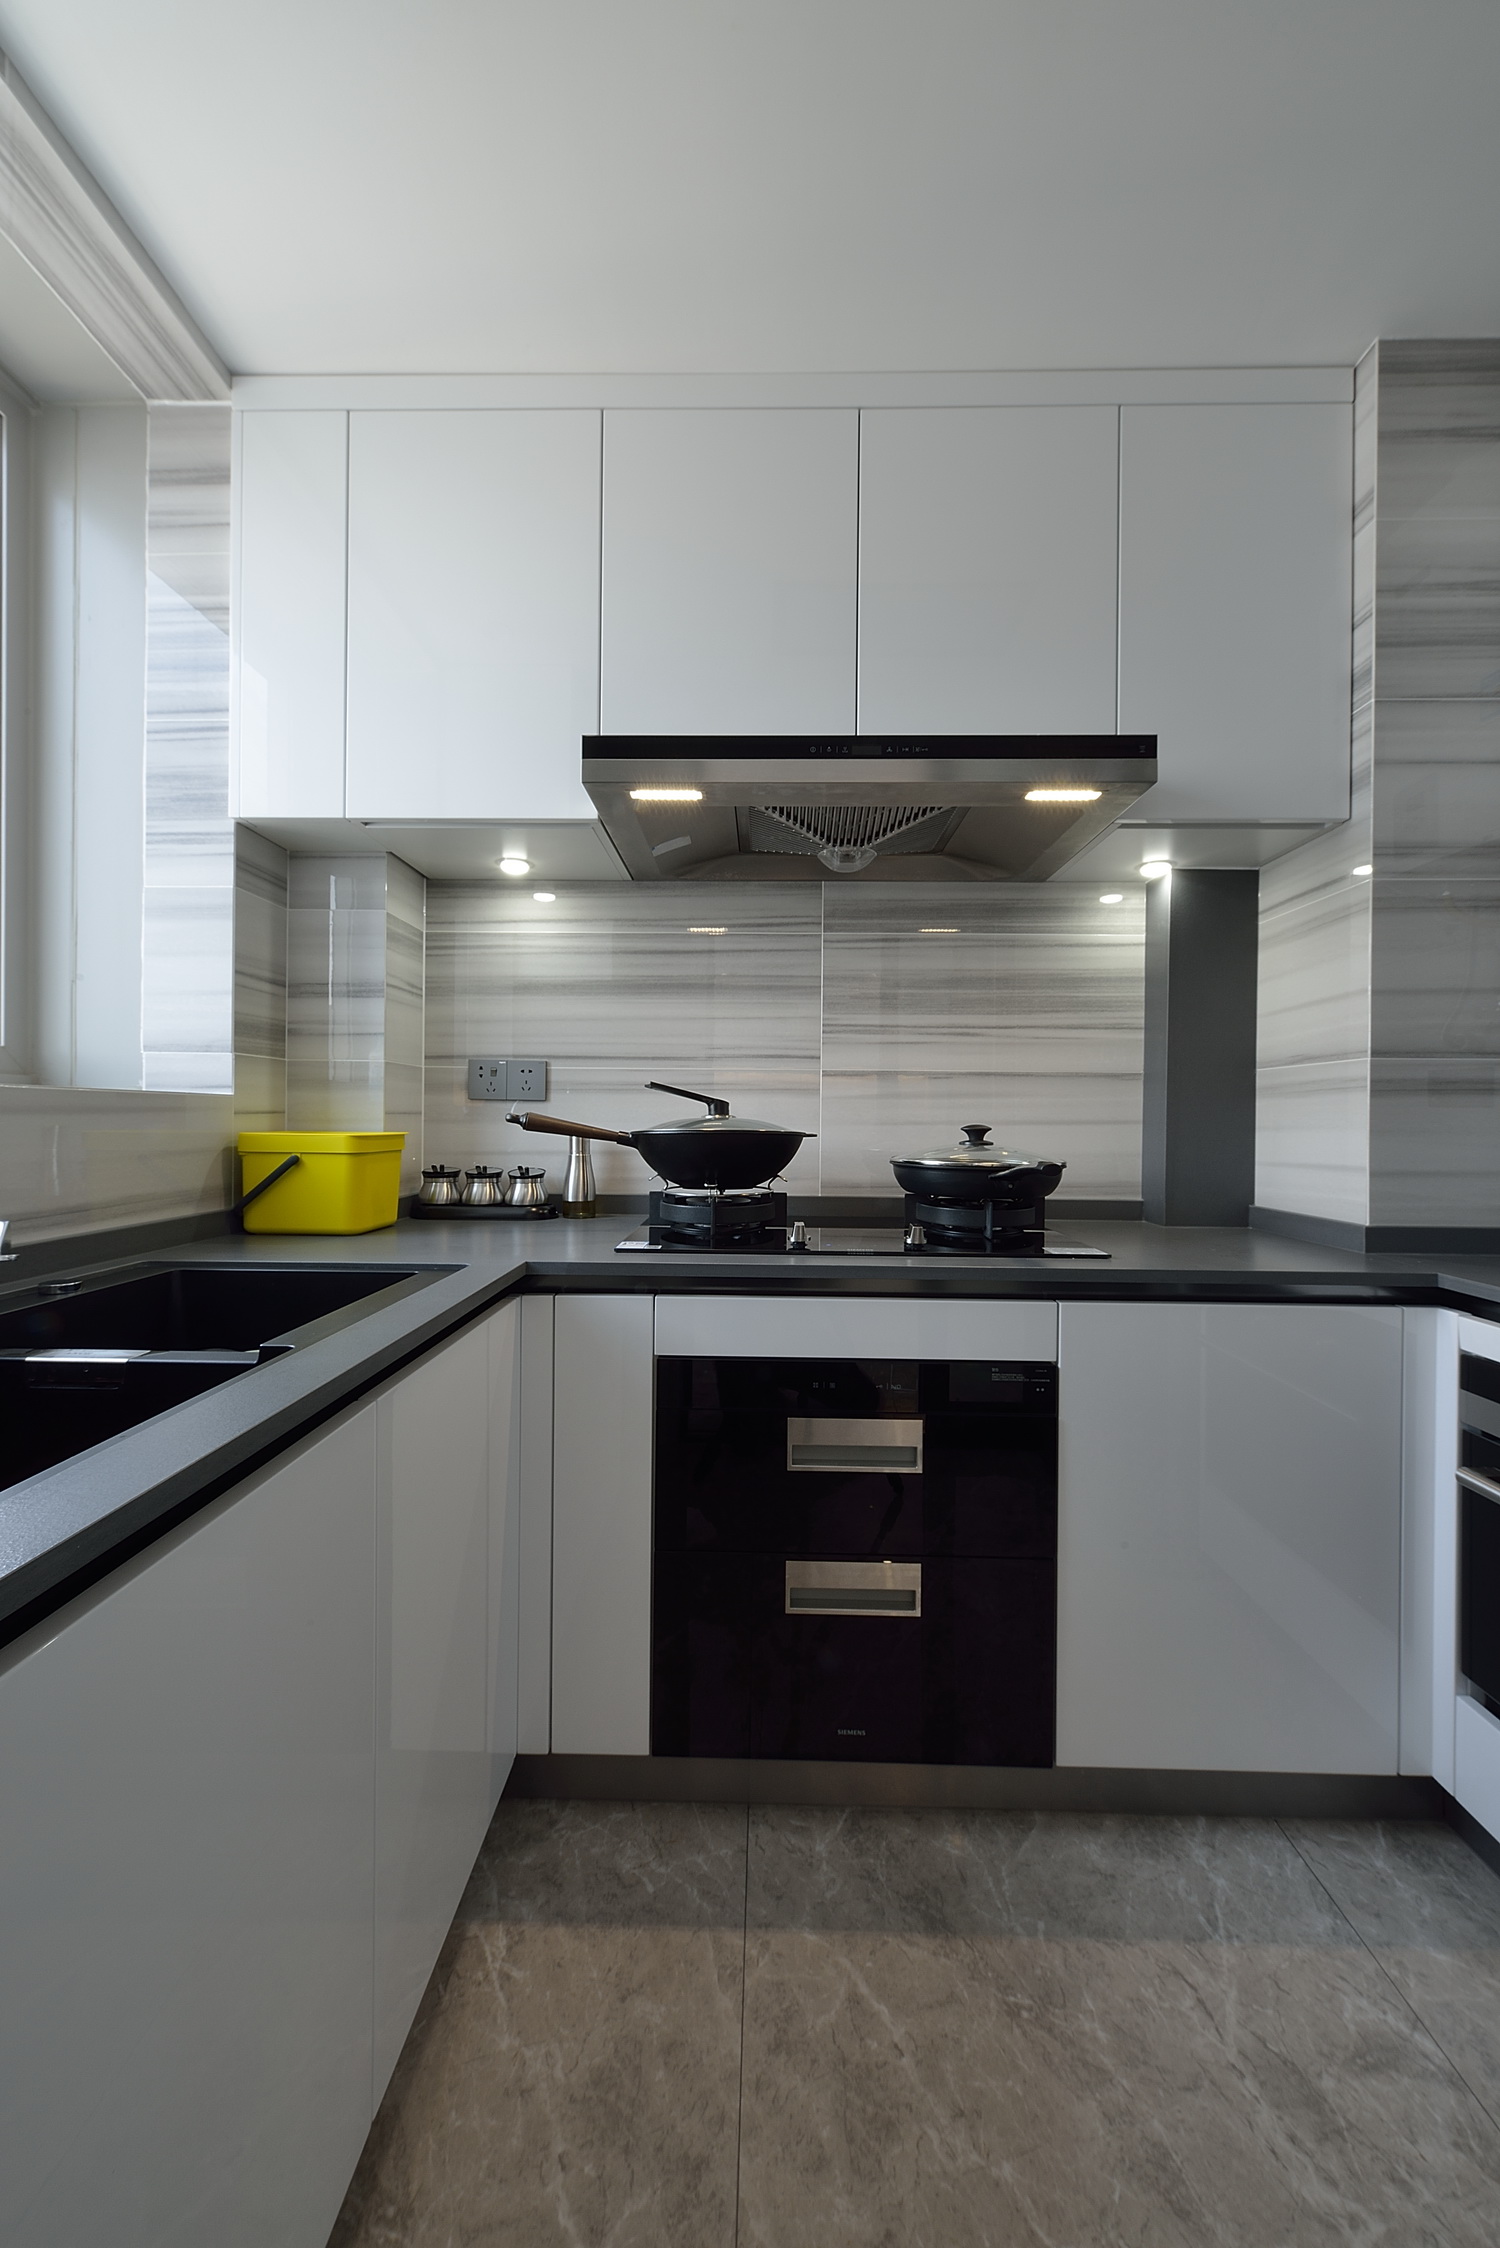 黑白灰公寓装修橱柜设计图时尚简约设计厨房不锈钢橱柜设计图北欧风格